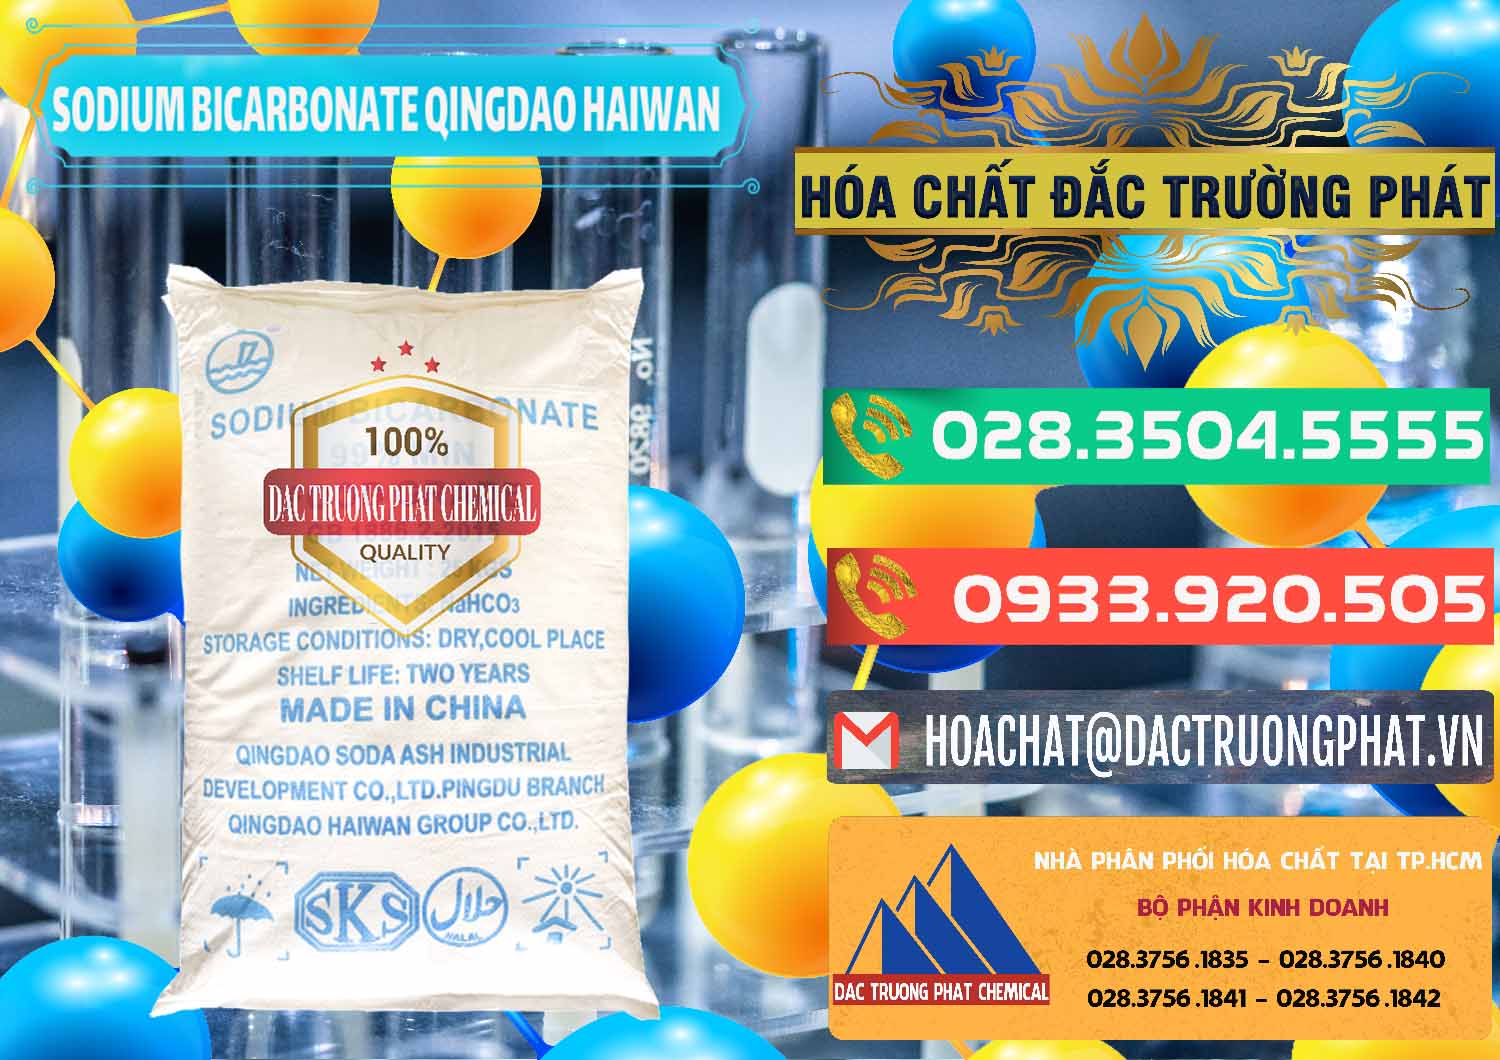 Nơi chuyên cung ứng và bán Sodium Bicarbonate – Bicar NaHCO3 Food Grade Qingdao Haiwan Trung Quốc China - 0258 - Công ty kinh doanh và phân phối hóa chất tại TP.HCM - congtyhoachat.com.vn